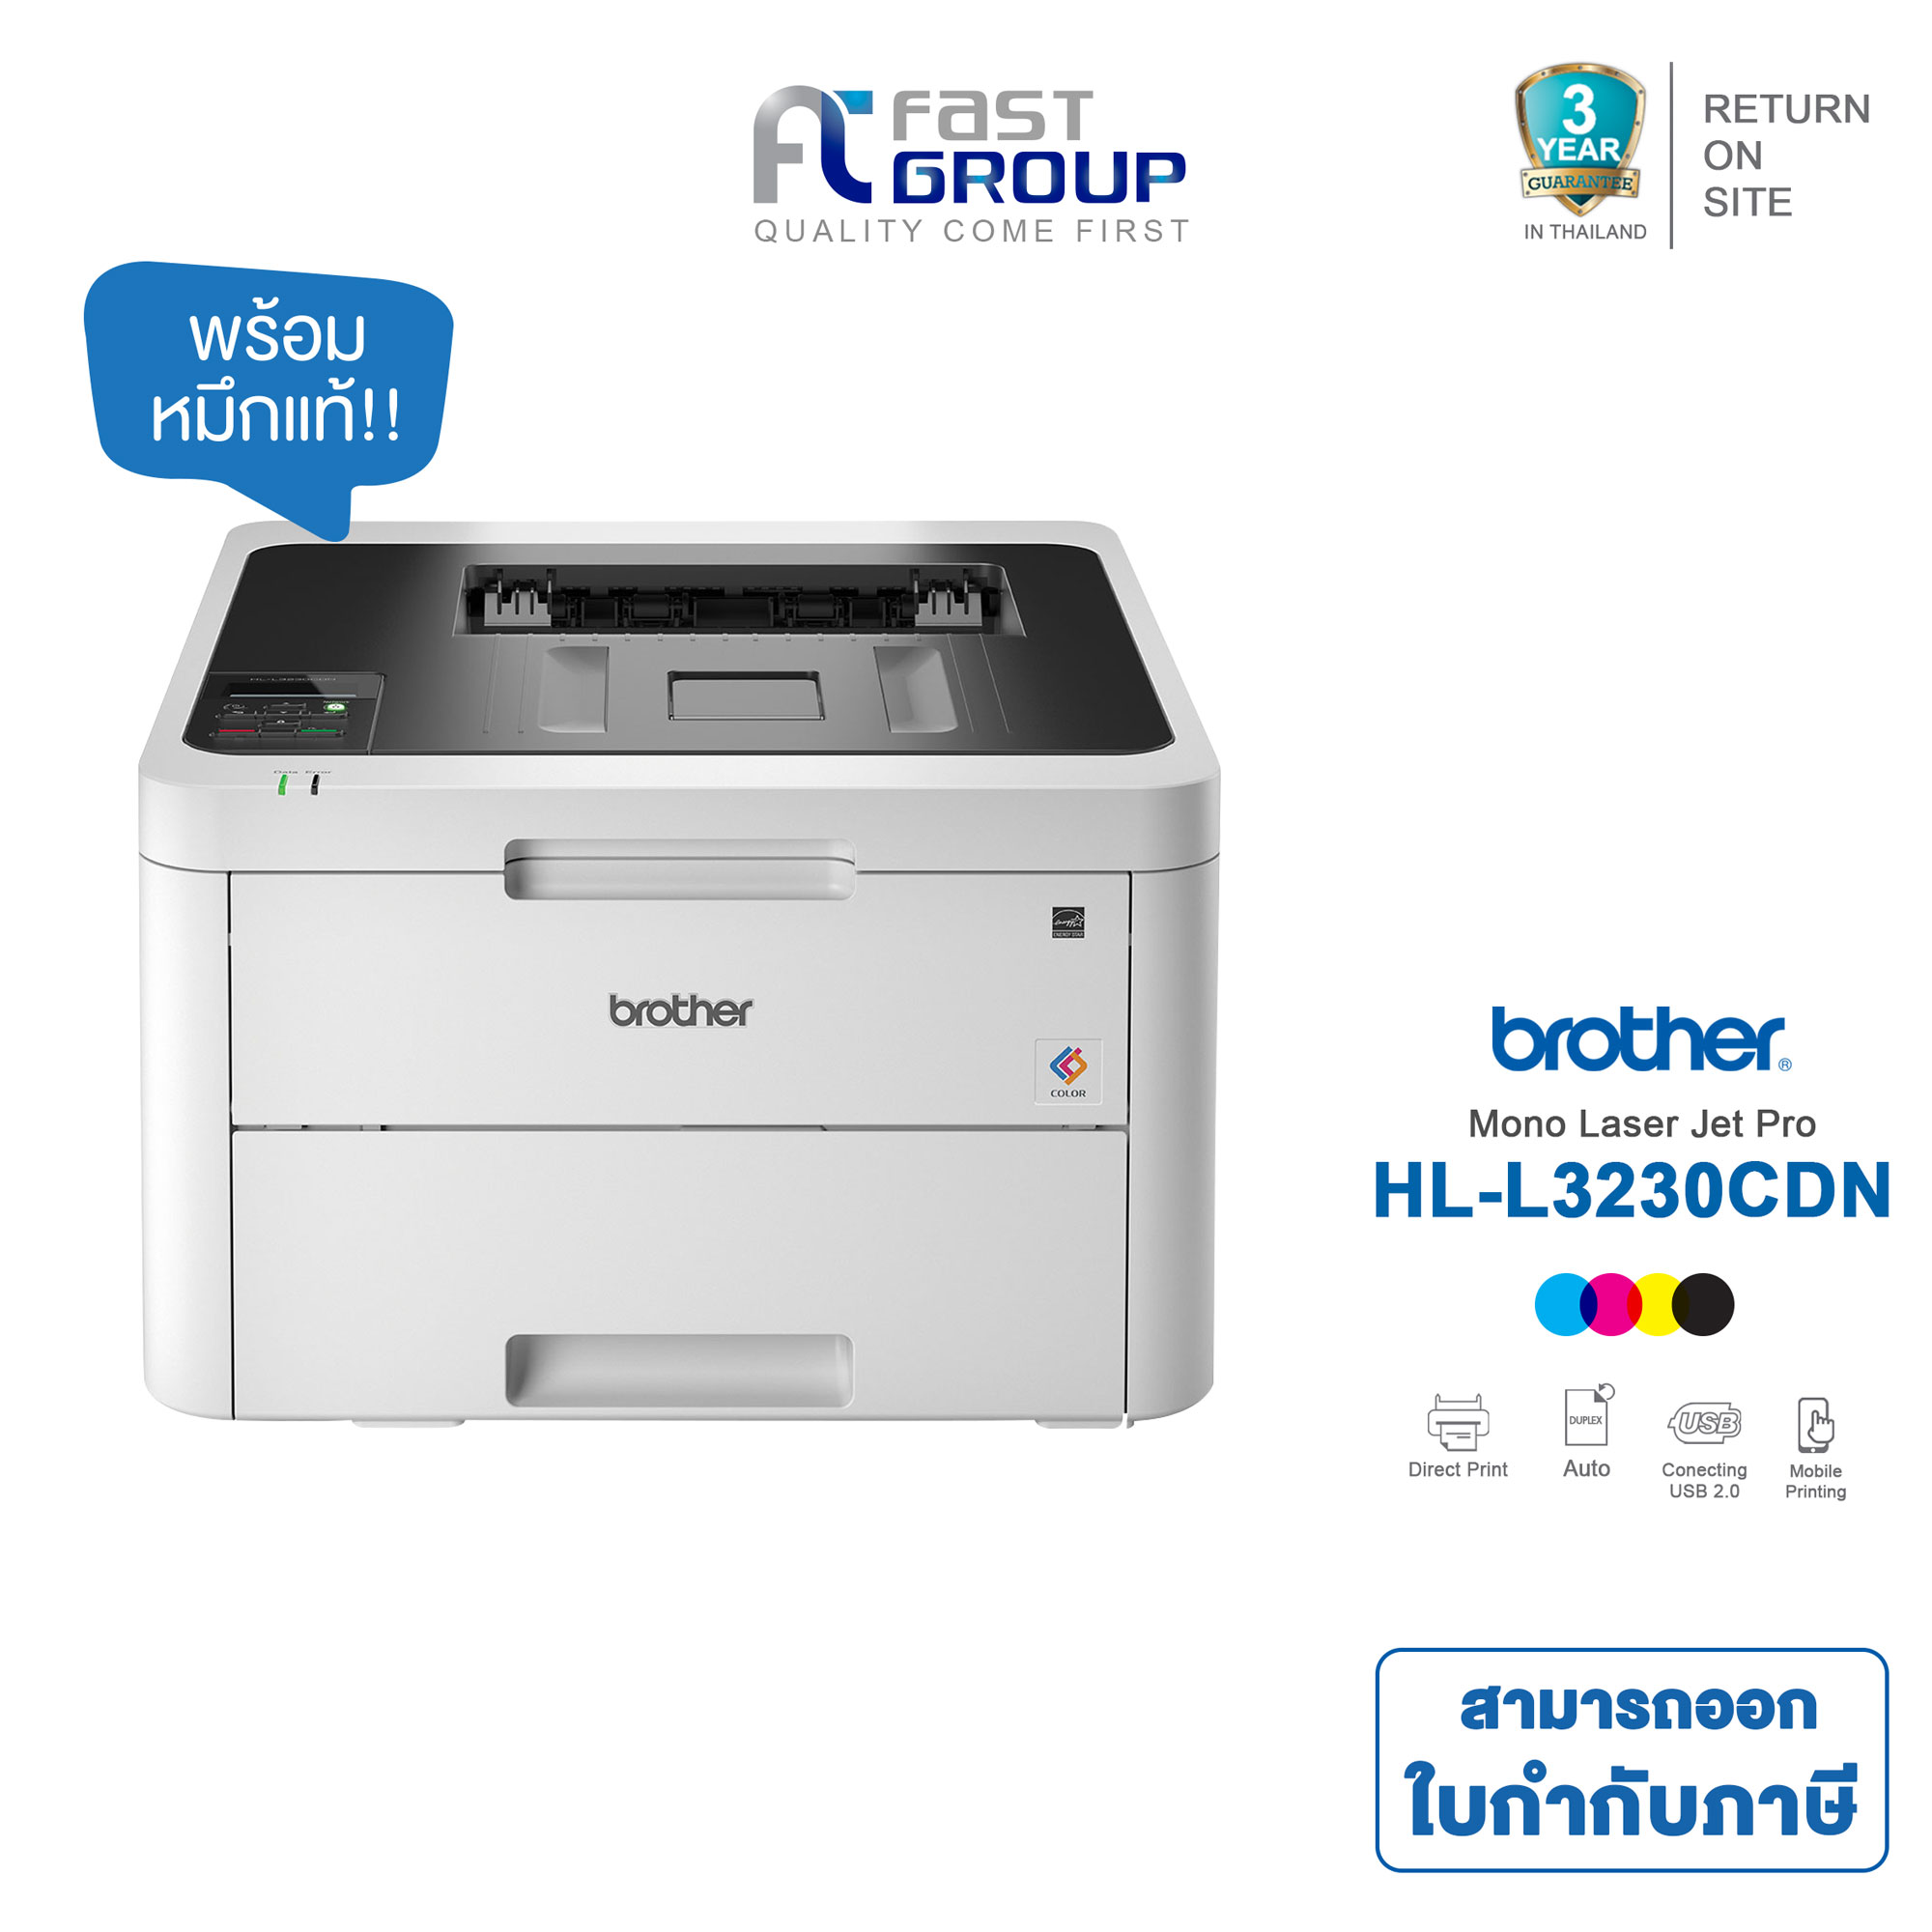 BROTHER HL-L3230CDN Color Laser Printer เครื่องพิมพ์ระบบเลเซอร์สี ( ปริ๊นได้อย่างเดียว)​ ปริ๊นได้ทั้งสีและขาวดำ